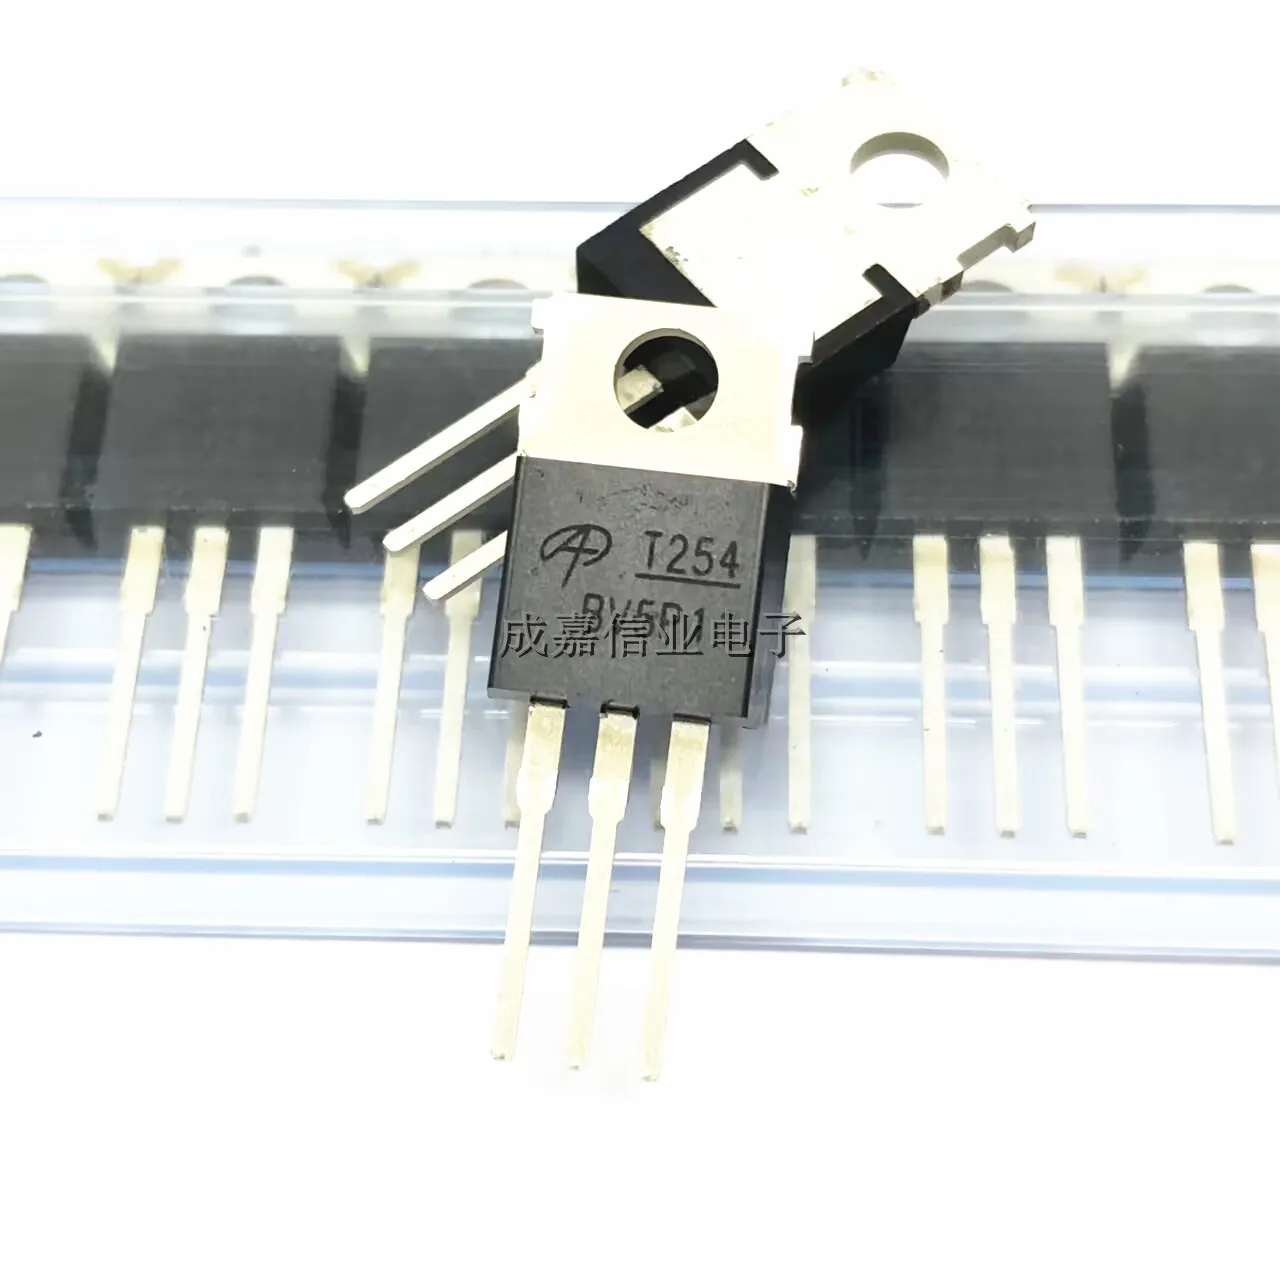 10 шт./лот транзистор полевого эффекта AOT254L TO-220-3 маркировка; T254 N-канальный транзистор 150 в 175 а рабочая температура; -55 ℃ ~ + ℃ новинка оригинальный полевой транзистор полевого эффекта 10 шт 3n10l26 ipd35n10s3l 26 to 252 100v 35a моп транзистор хорошего качества